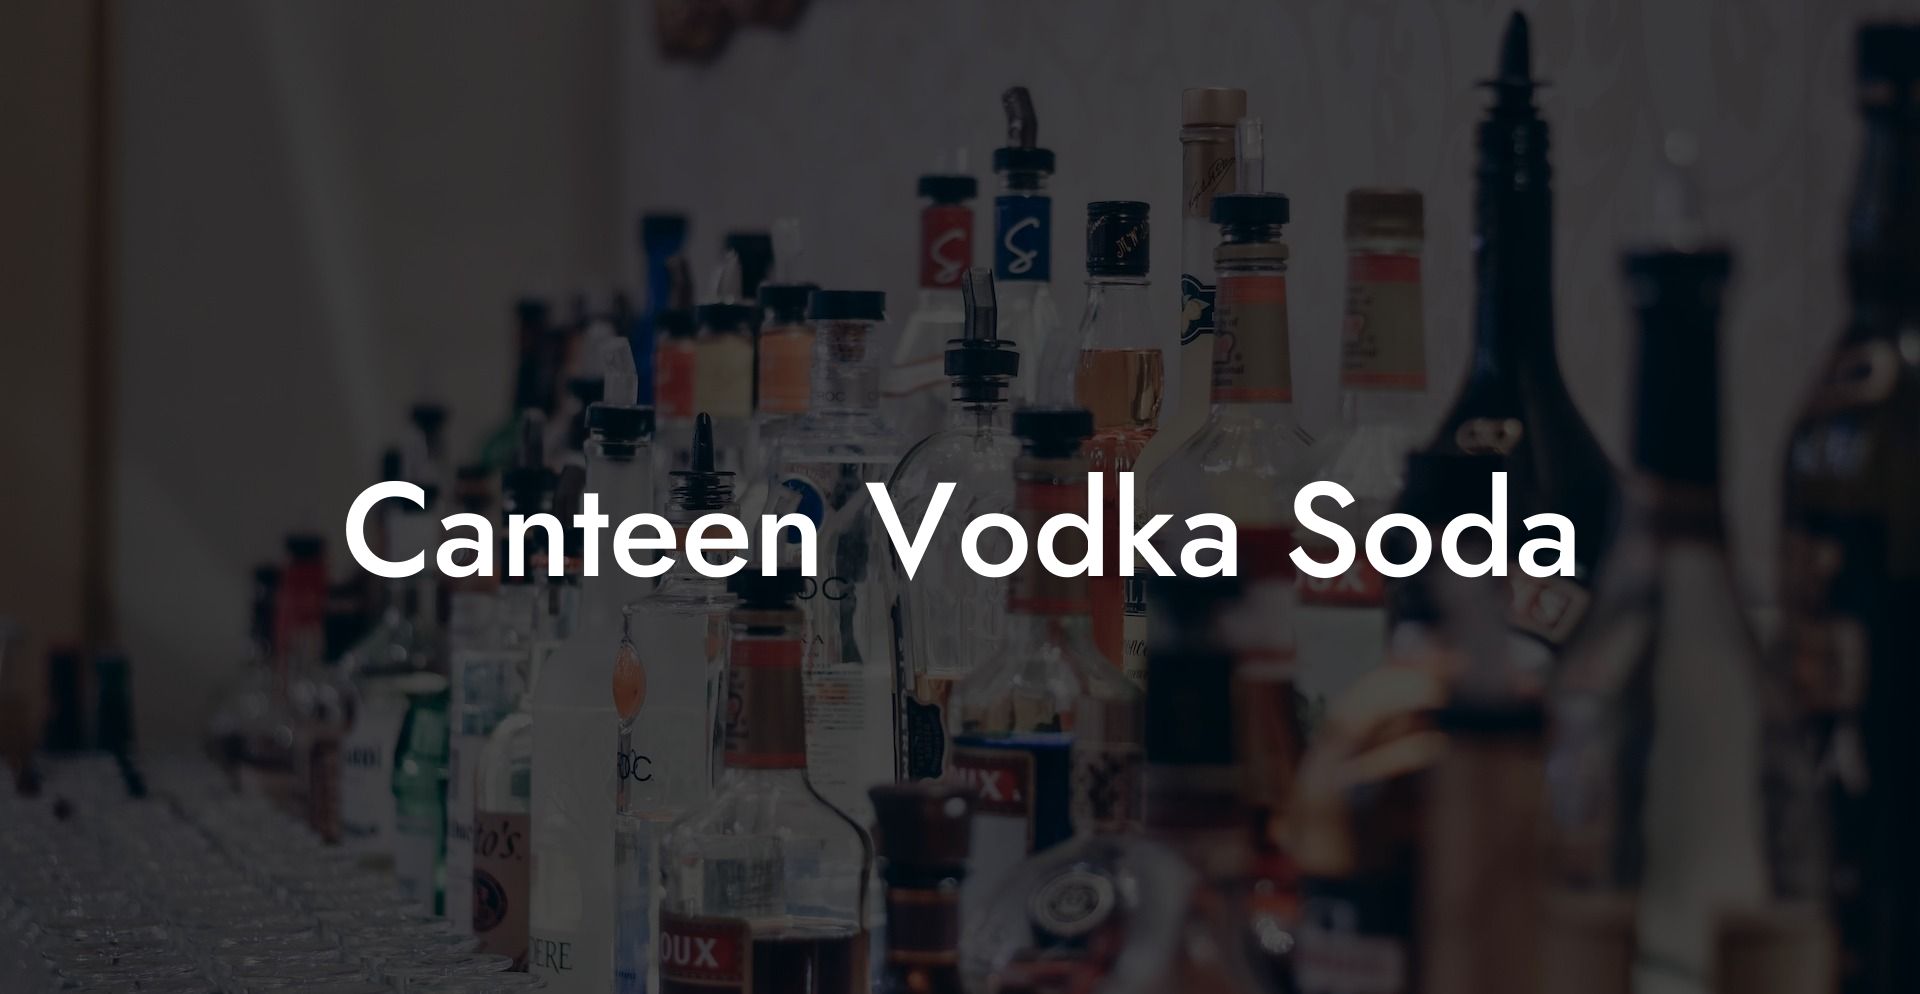 Canteen Vodka Soda